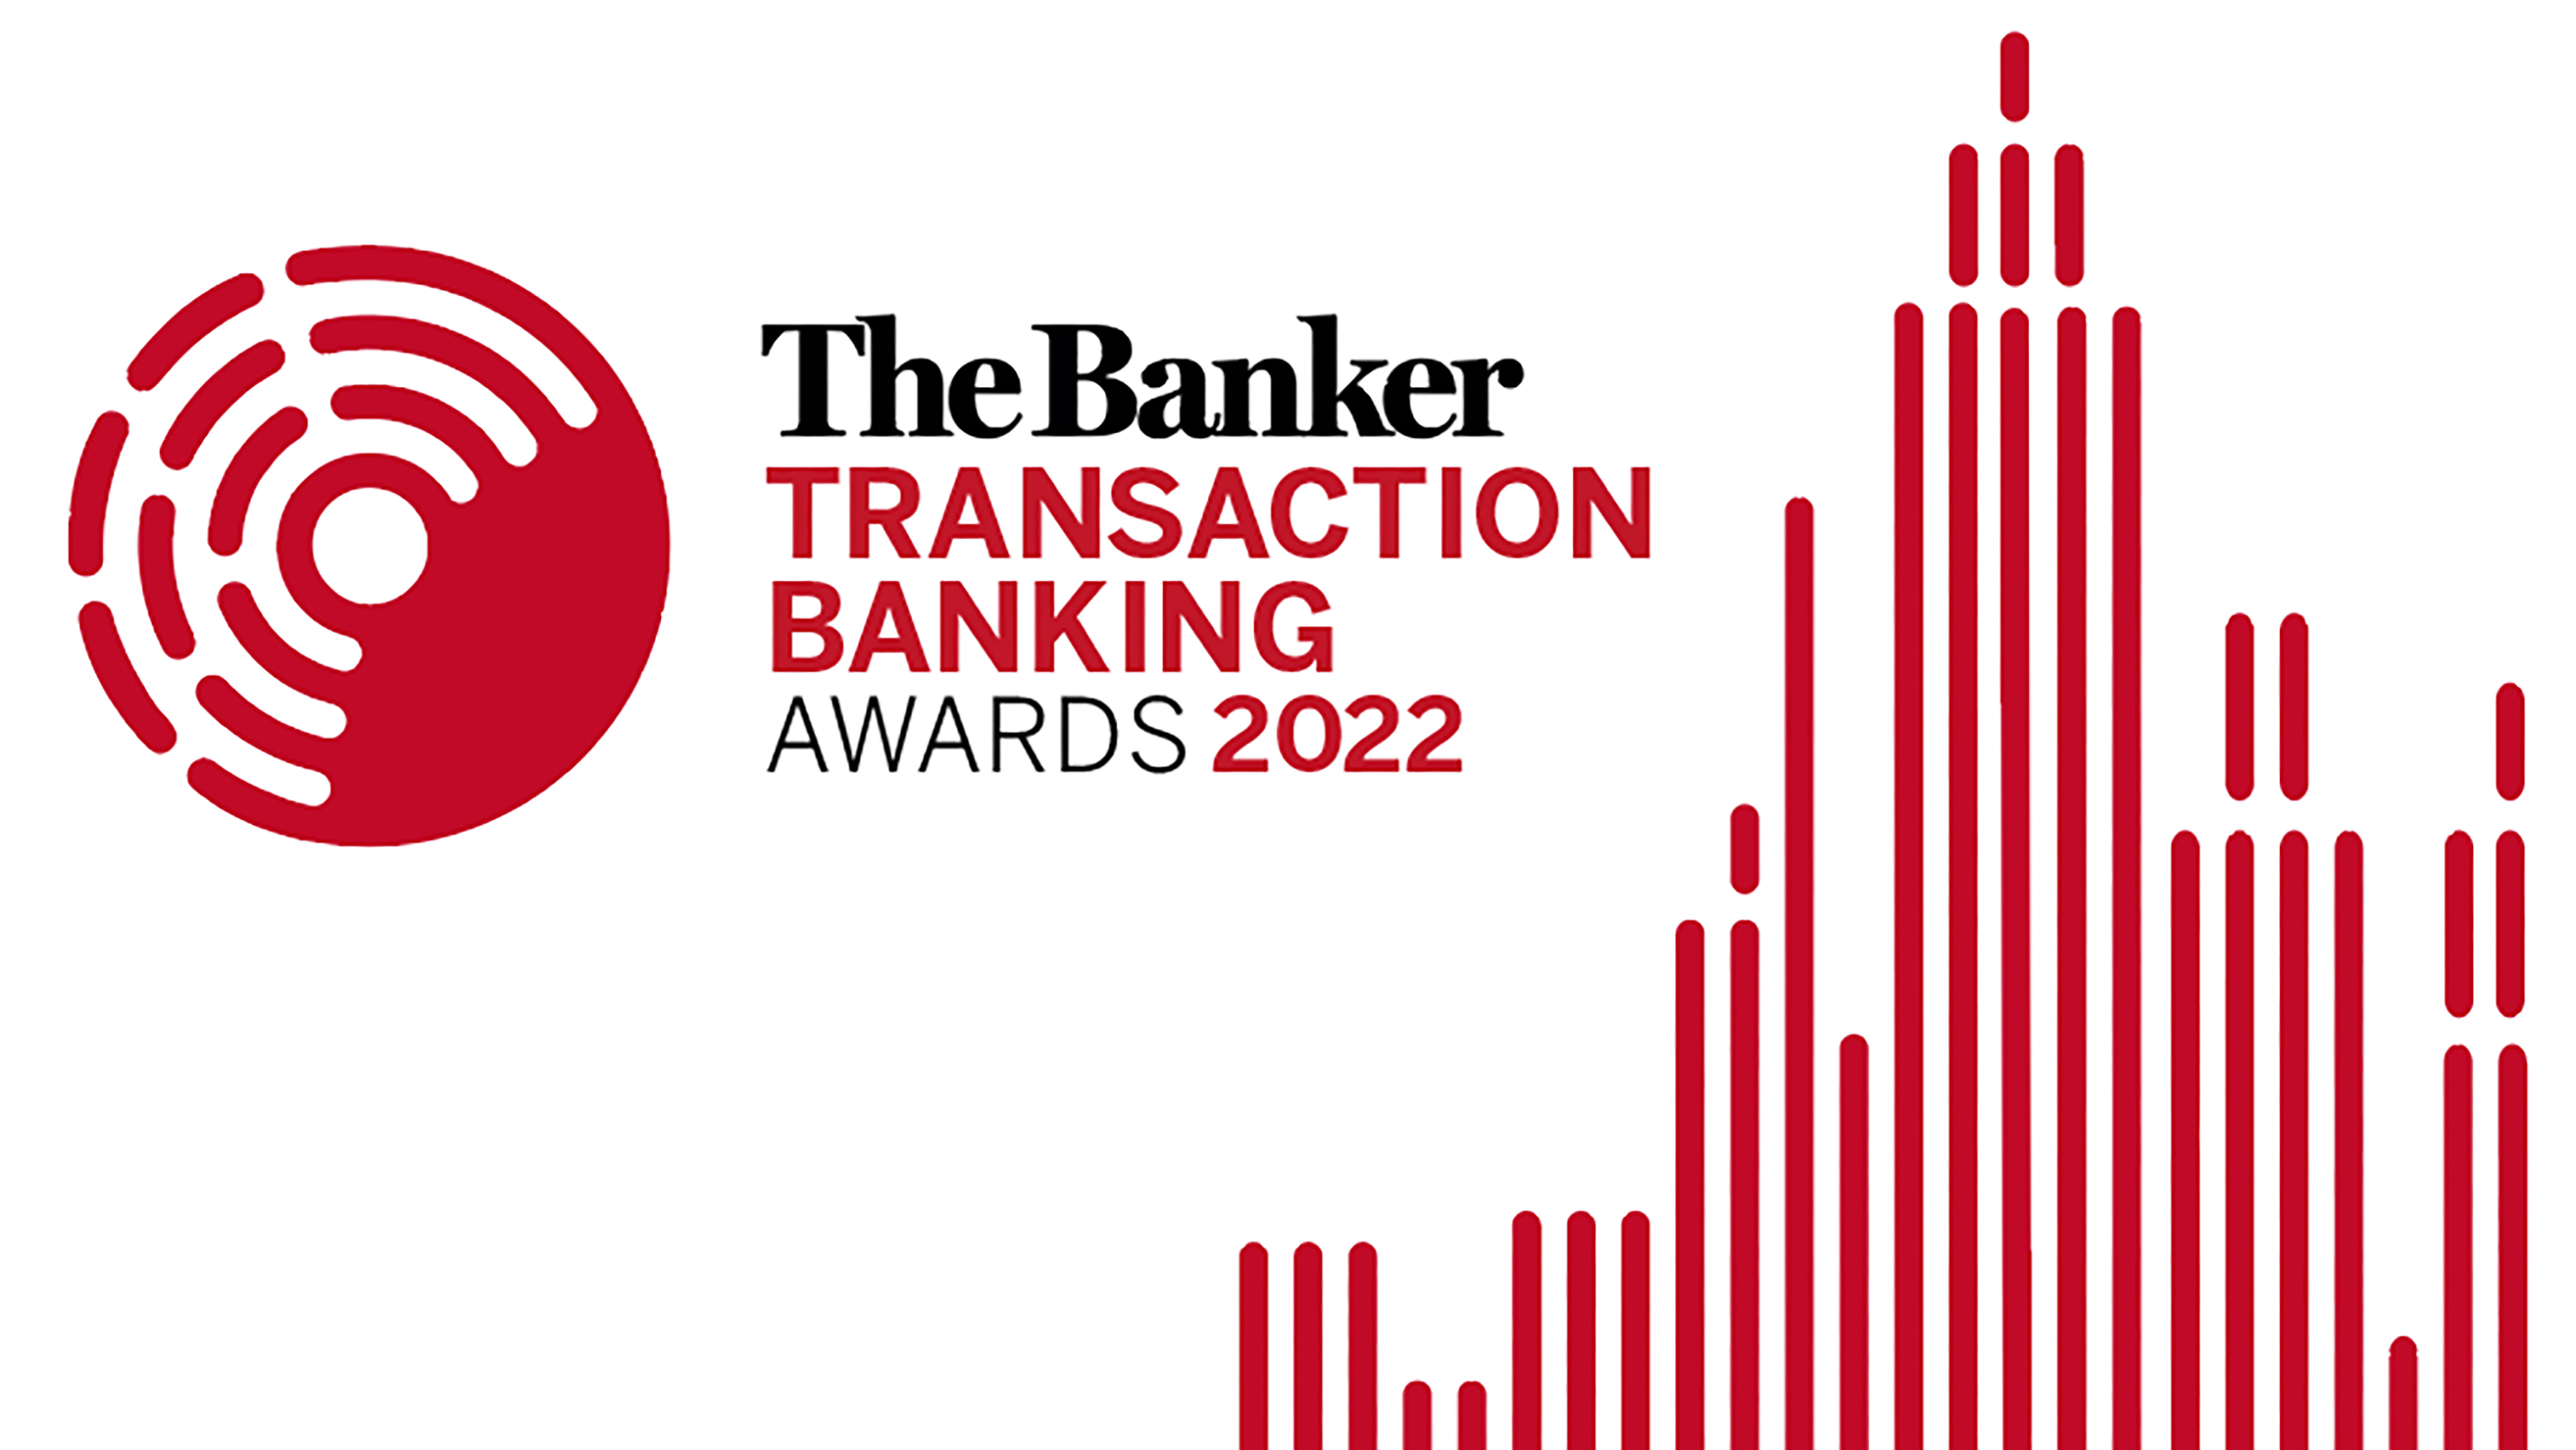 Transaction Banking Awards 2022